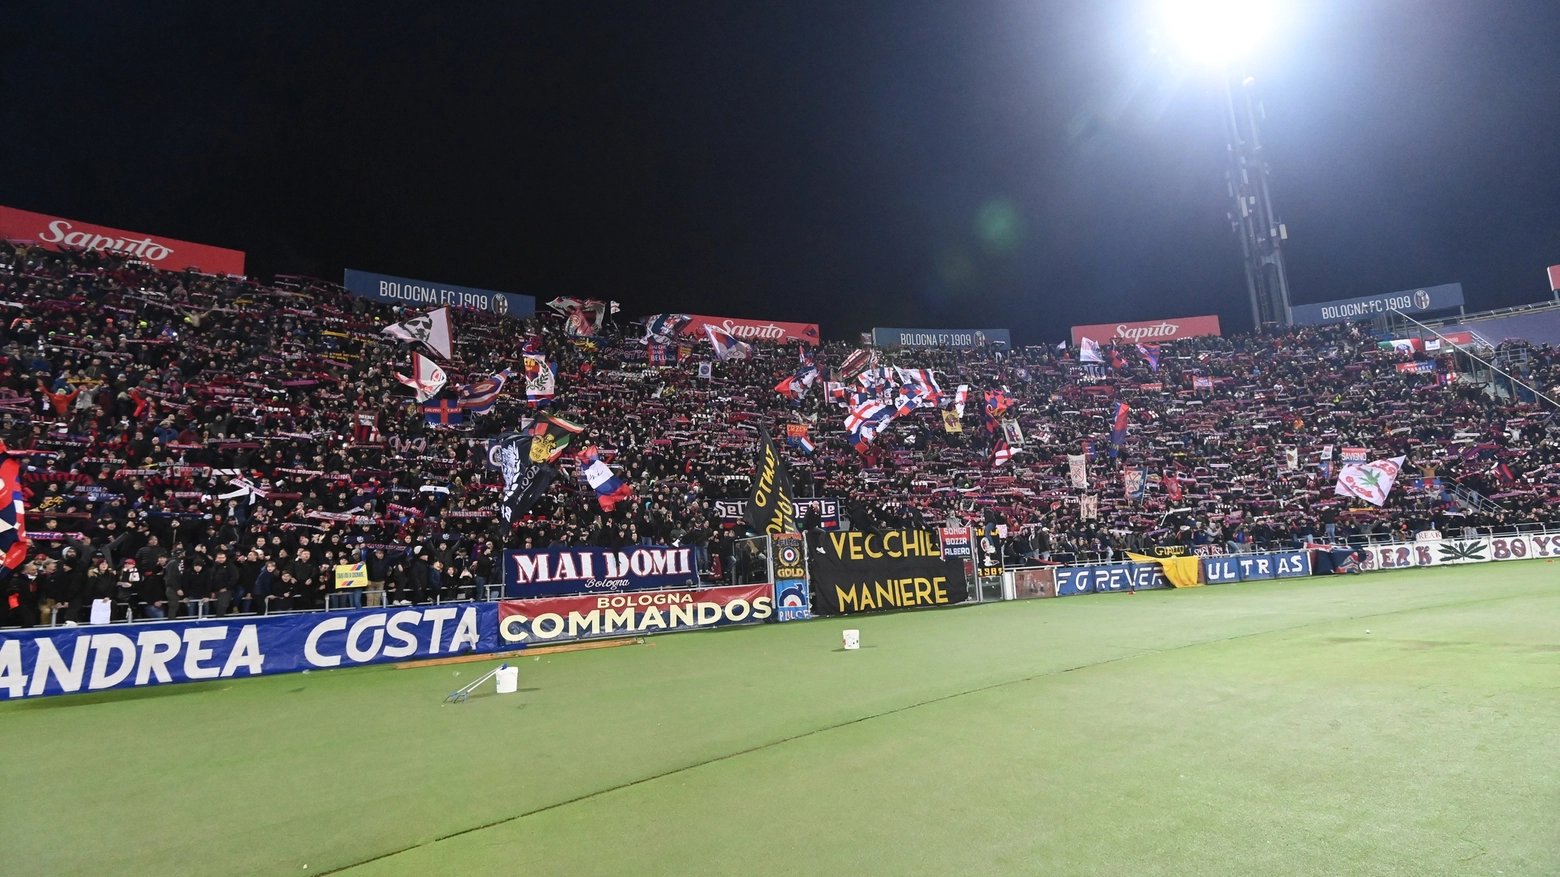 E' già febbre rossoblù in vista di Bologna-Inter: bruciati 7000 biglietti in poche ore, la vendita è al momento riservata ai soli possessori di fidelity card